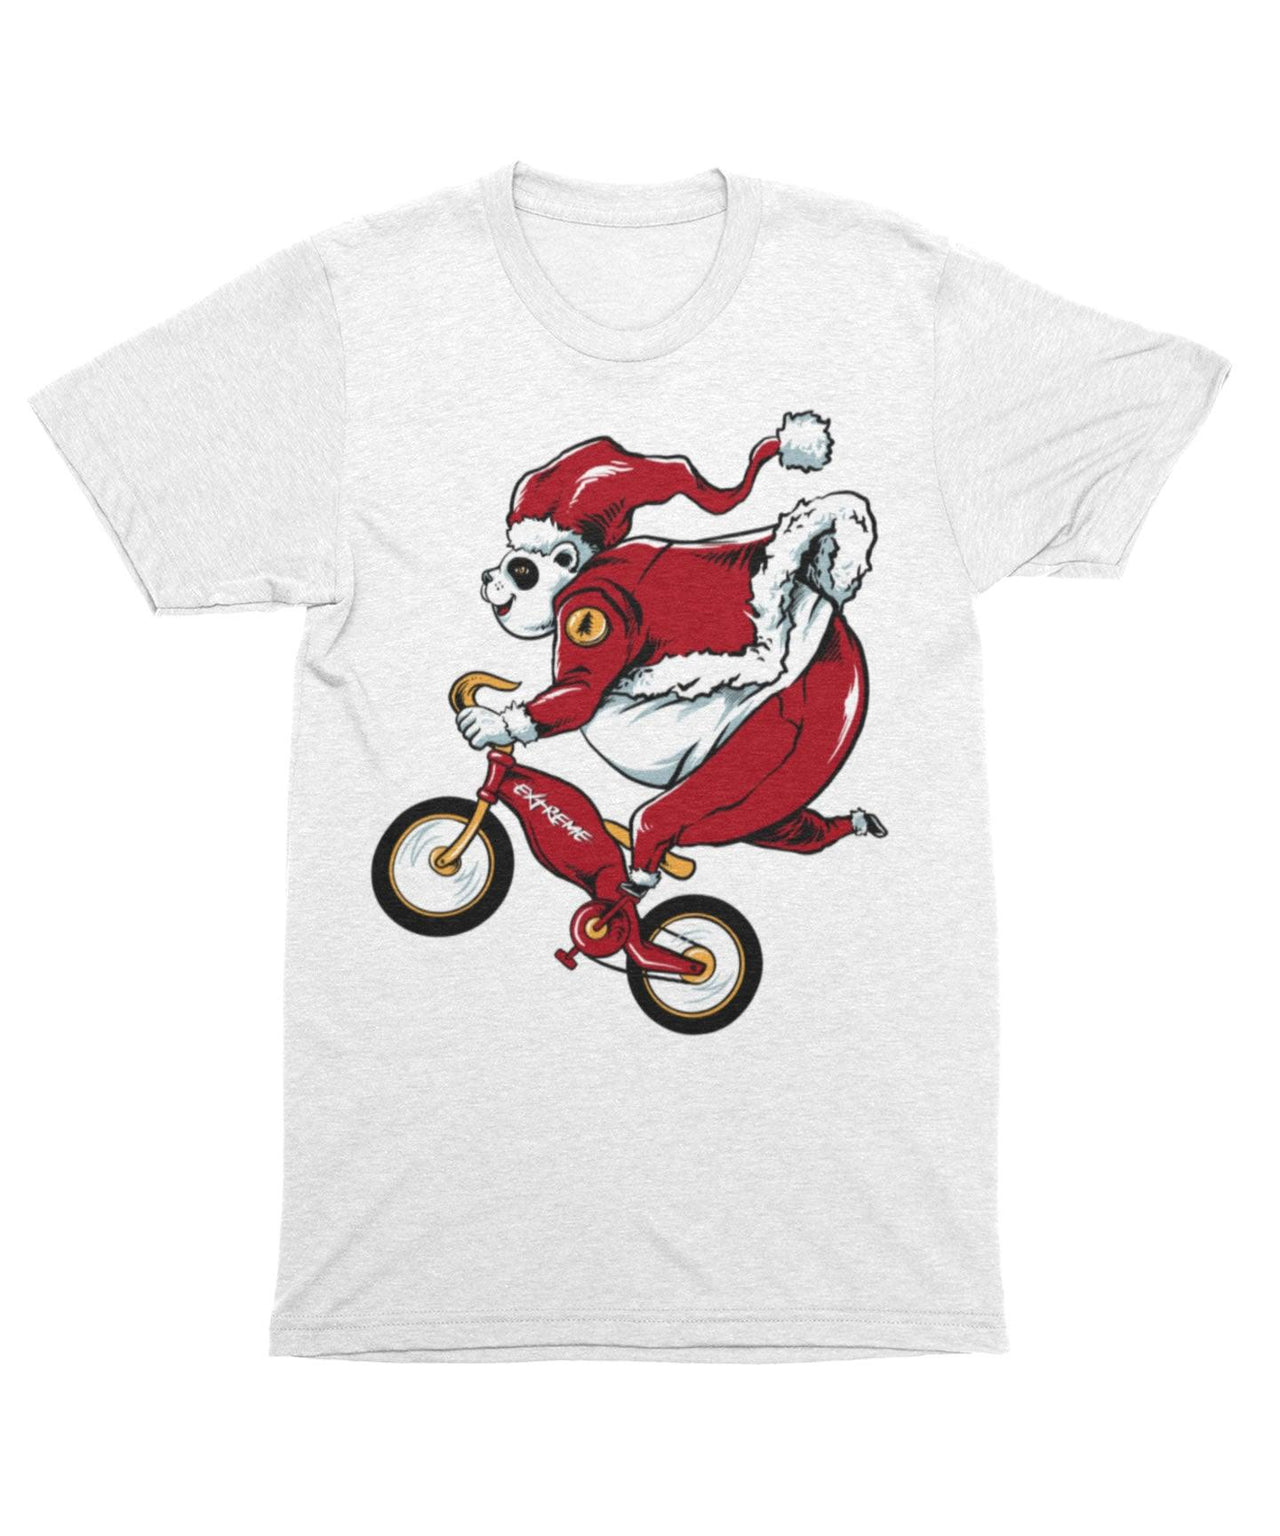 Panda Santa Unisex Christmas Unisex T-Shirt For Men And Women 8Ball